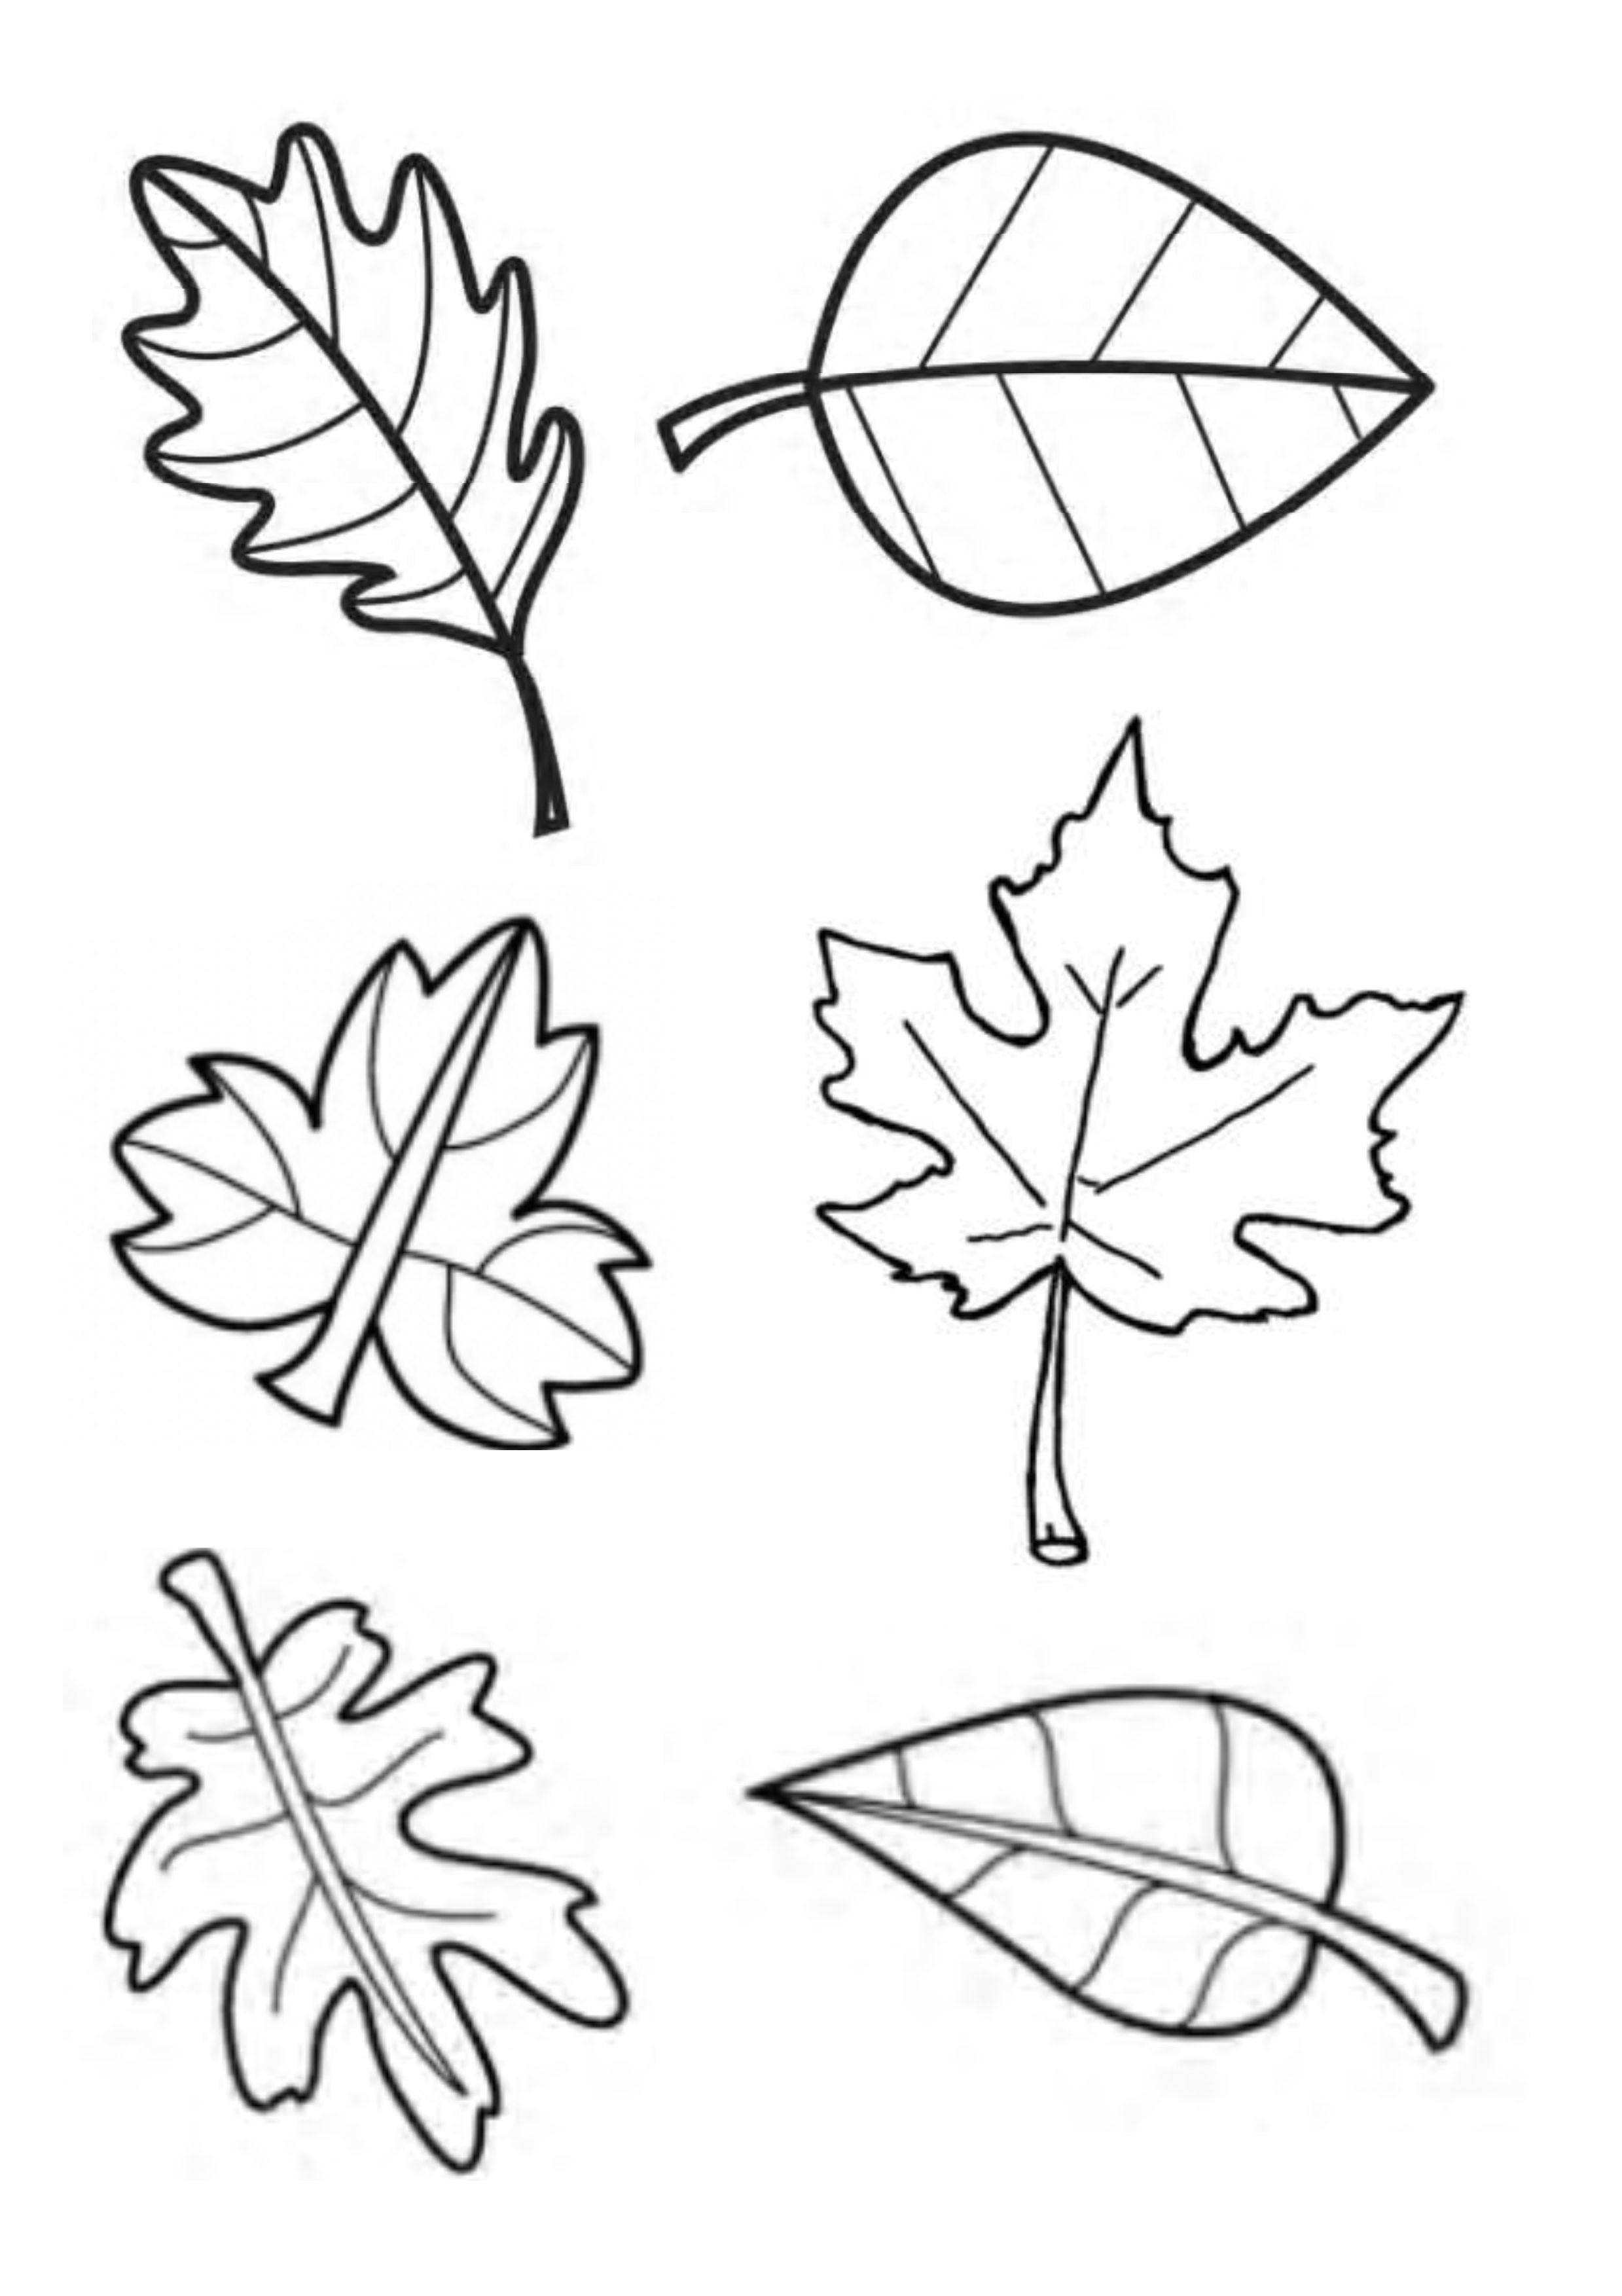 Красивые шаблоны листьев. Шаблоны осенних листьев. Трафареты осенних листьев. Листья трафарет для вырезания. Трафареты весенних листьев.